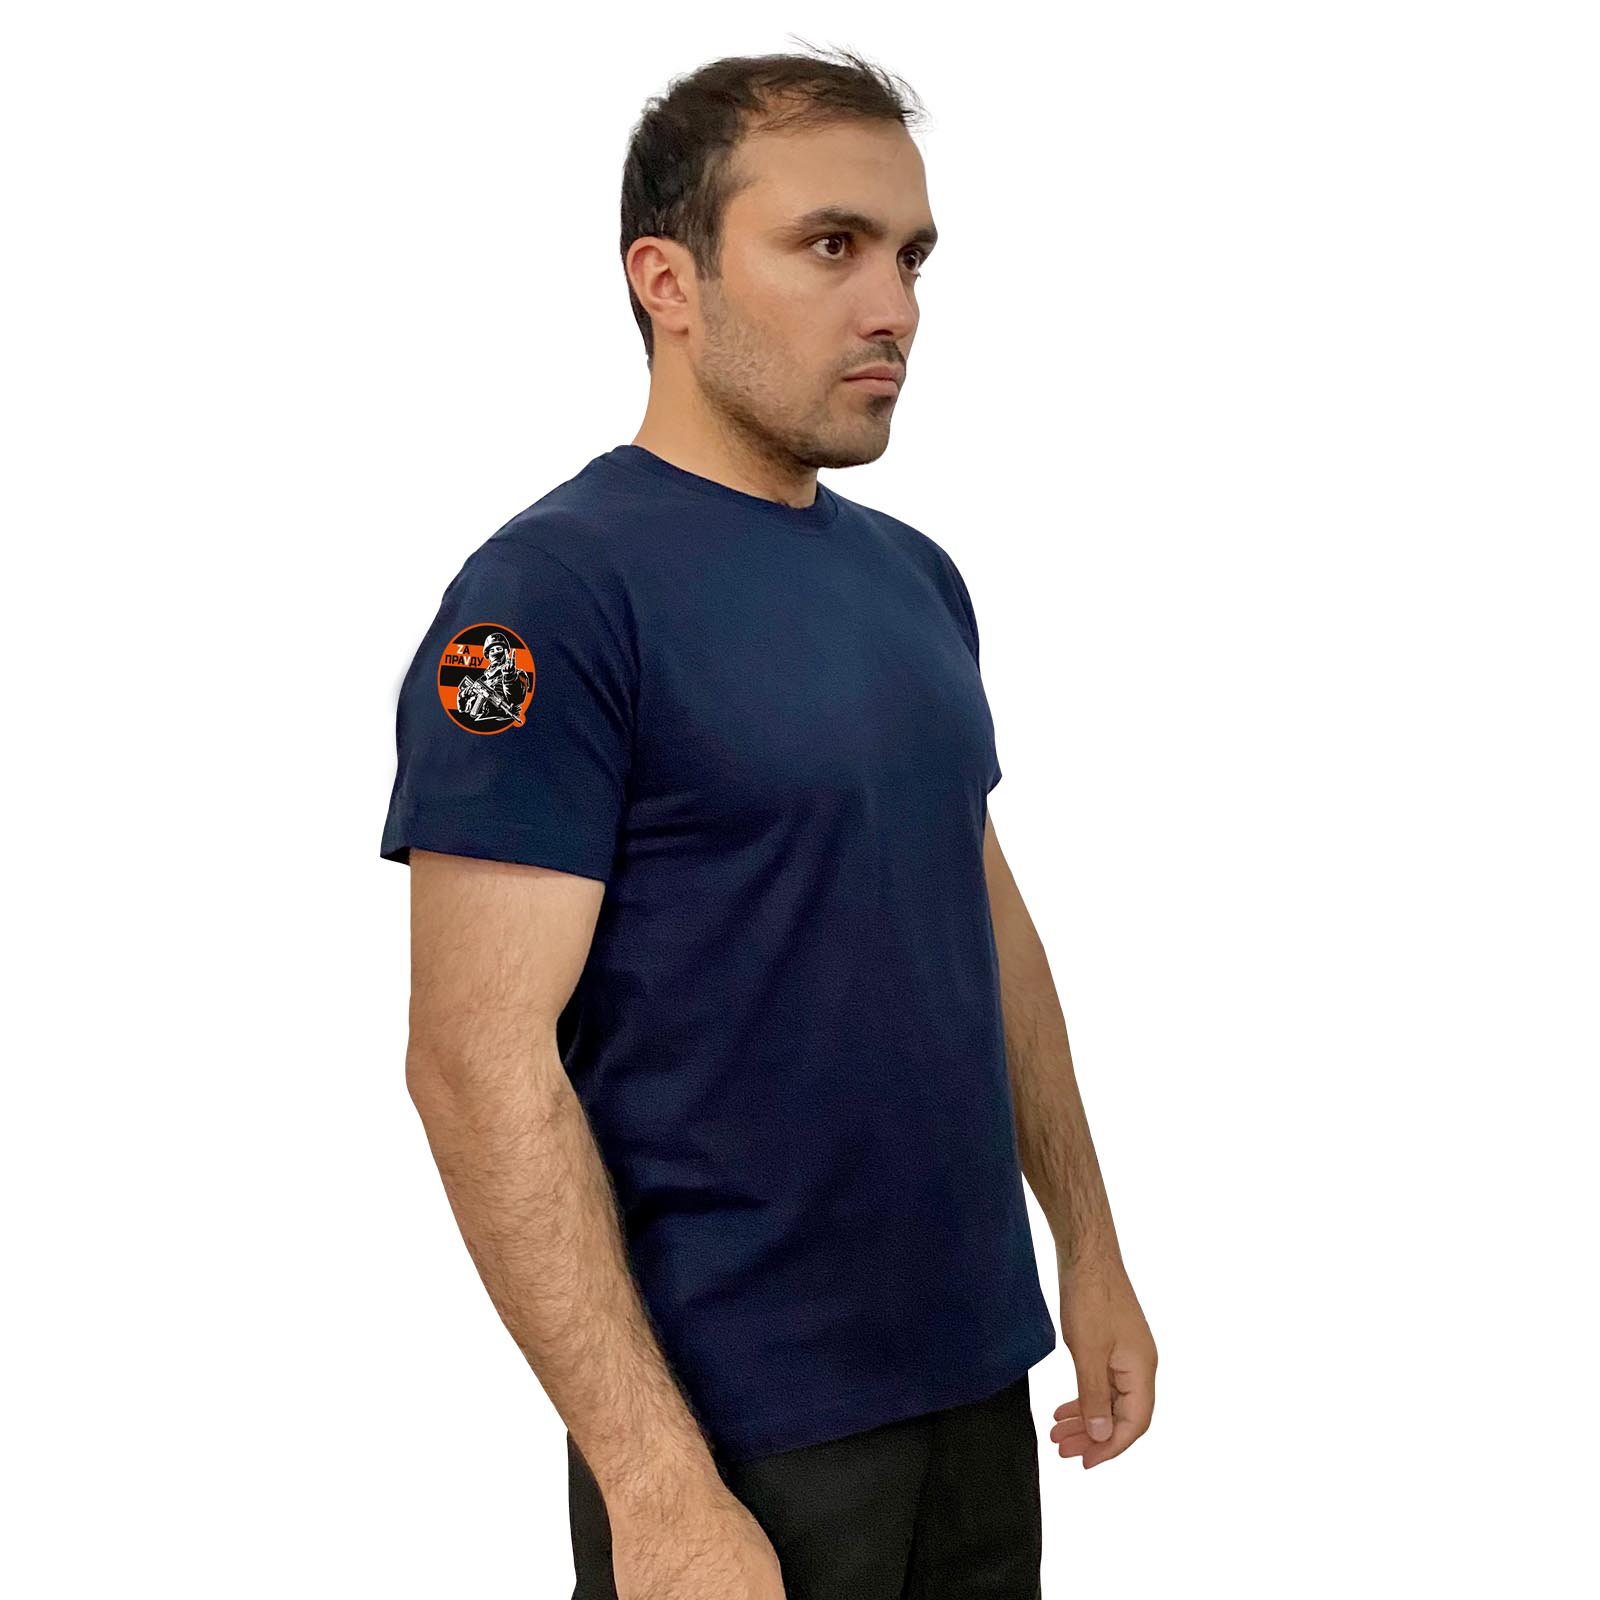 Тёмно-синяя футболка с гвардейским трансфером "Zа праVду" на рукаве